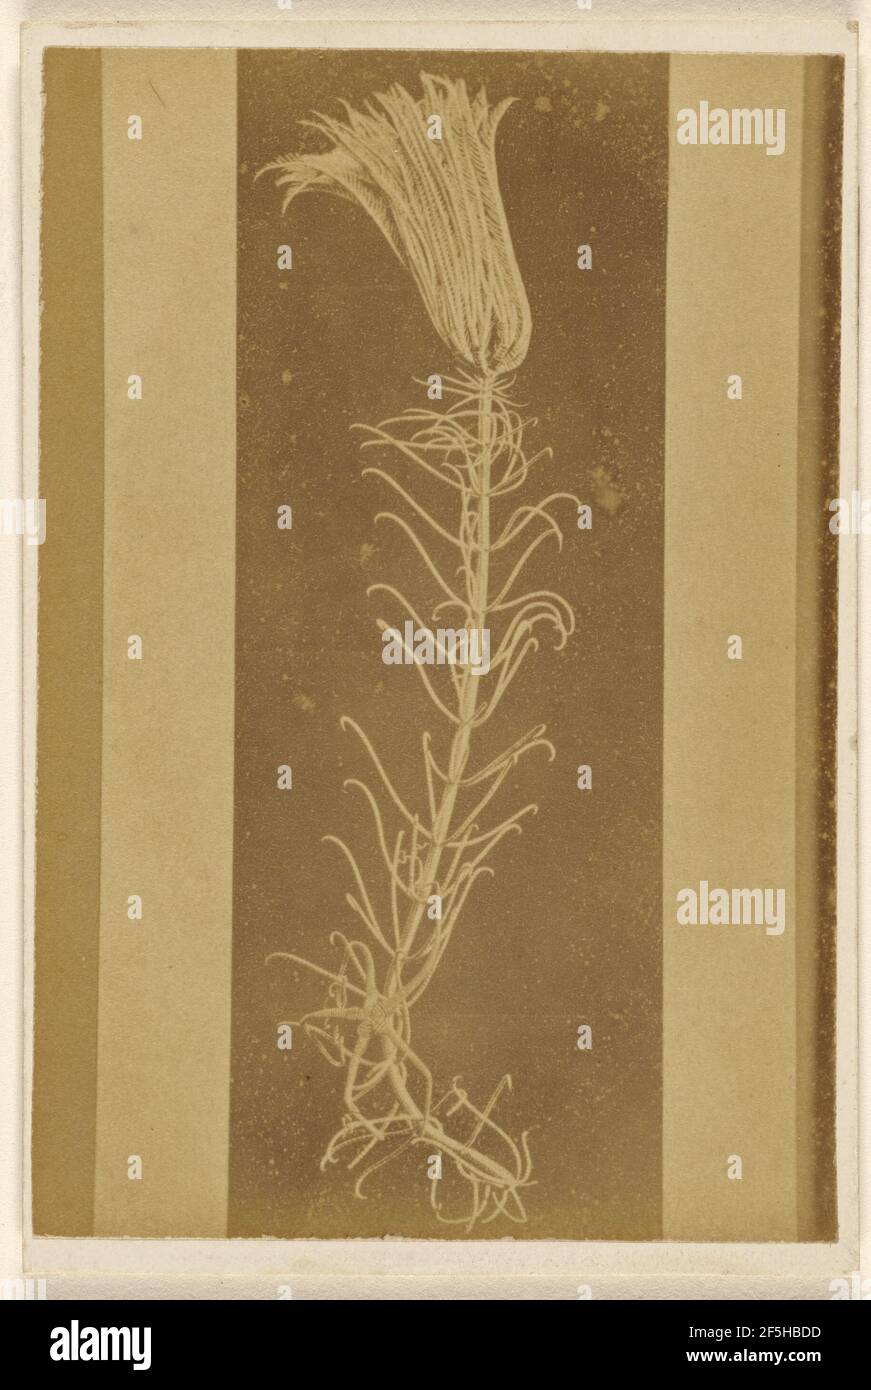 Pentacrinus caput medusae (greatly reduced) Atlantic Dredging.. William Hart (British, active Birmingham, England 1860s) Stock Photo